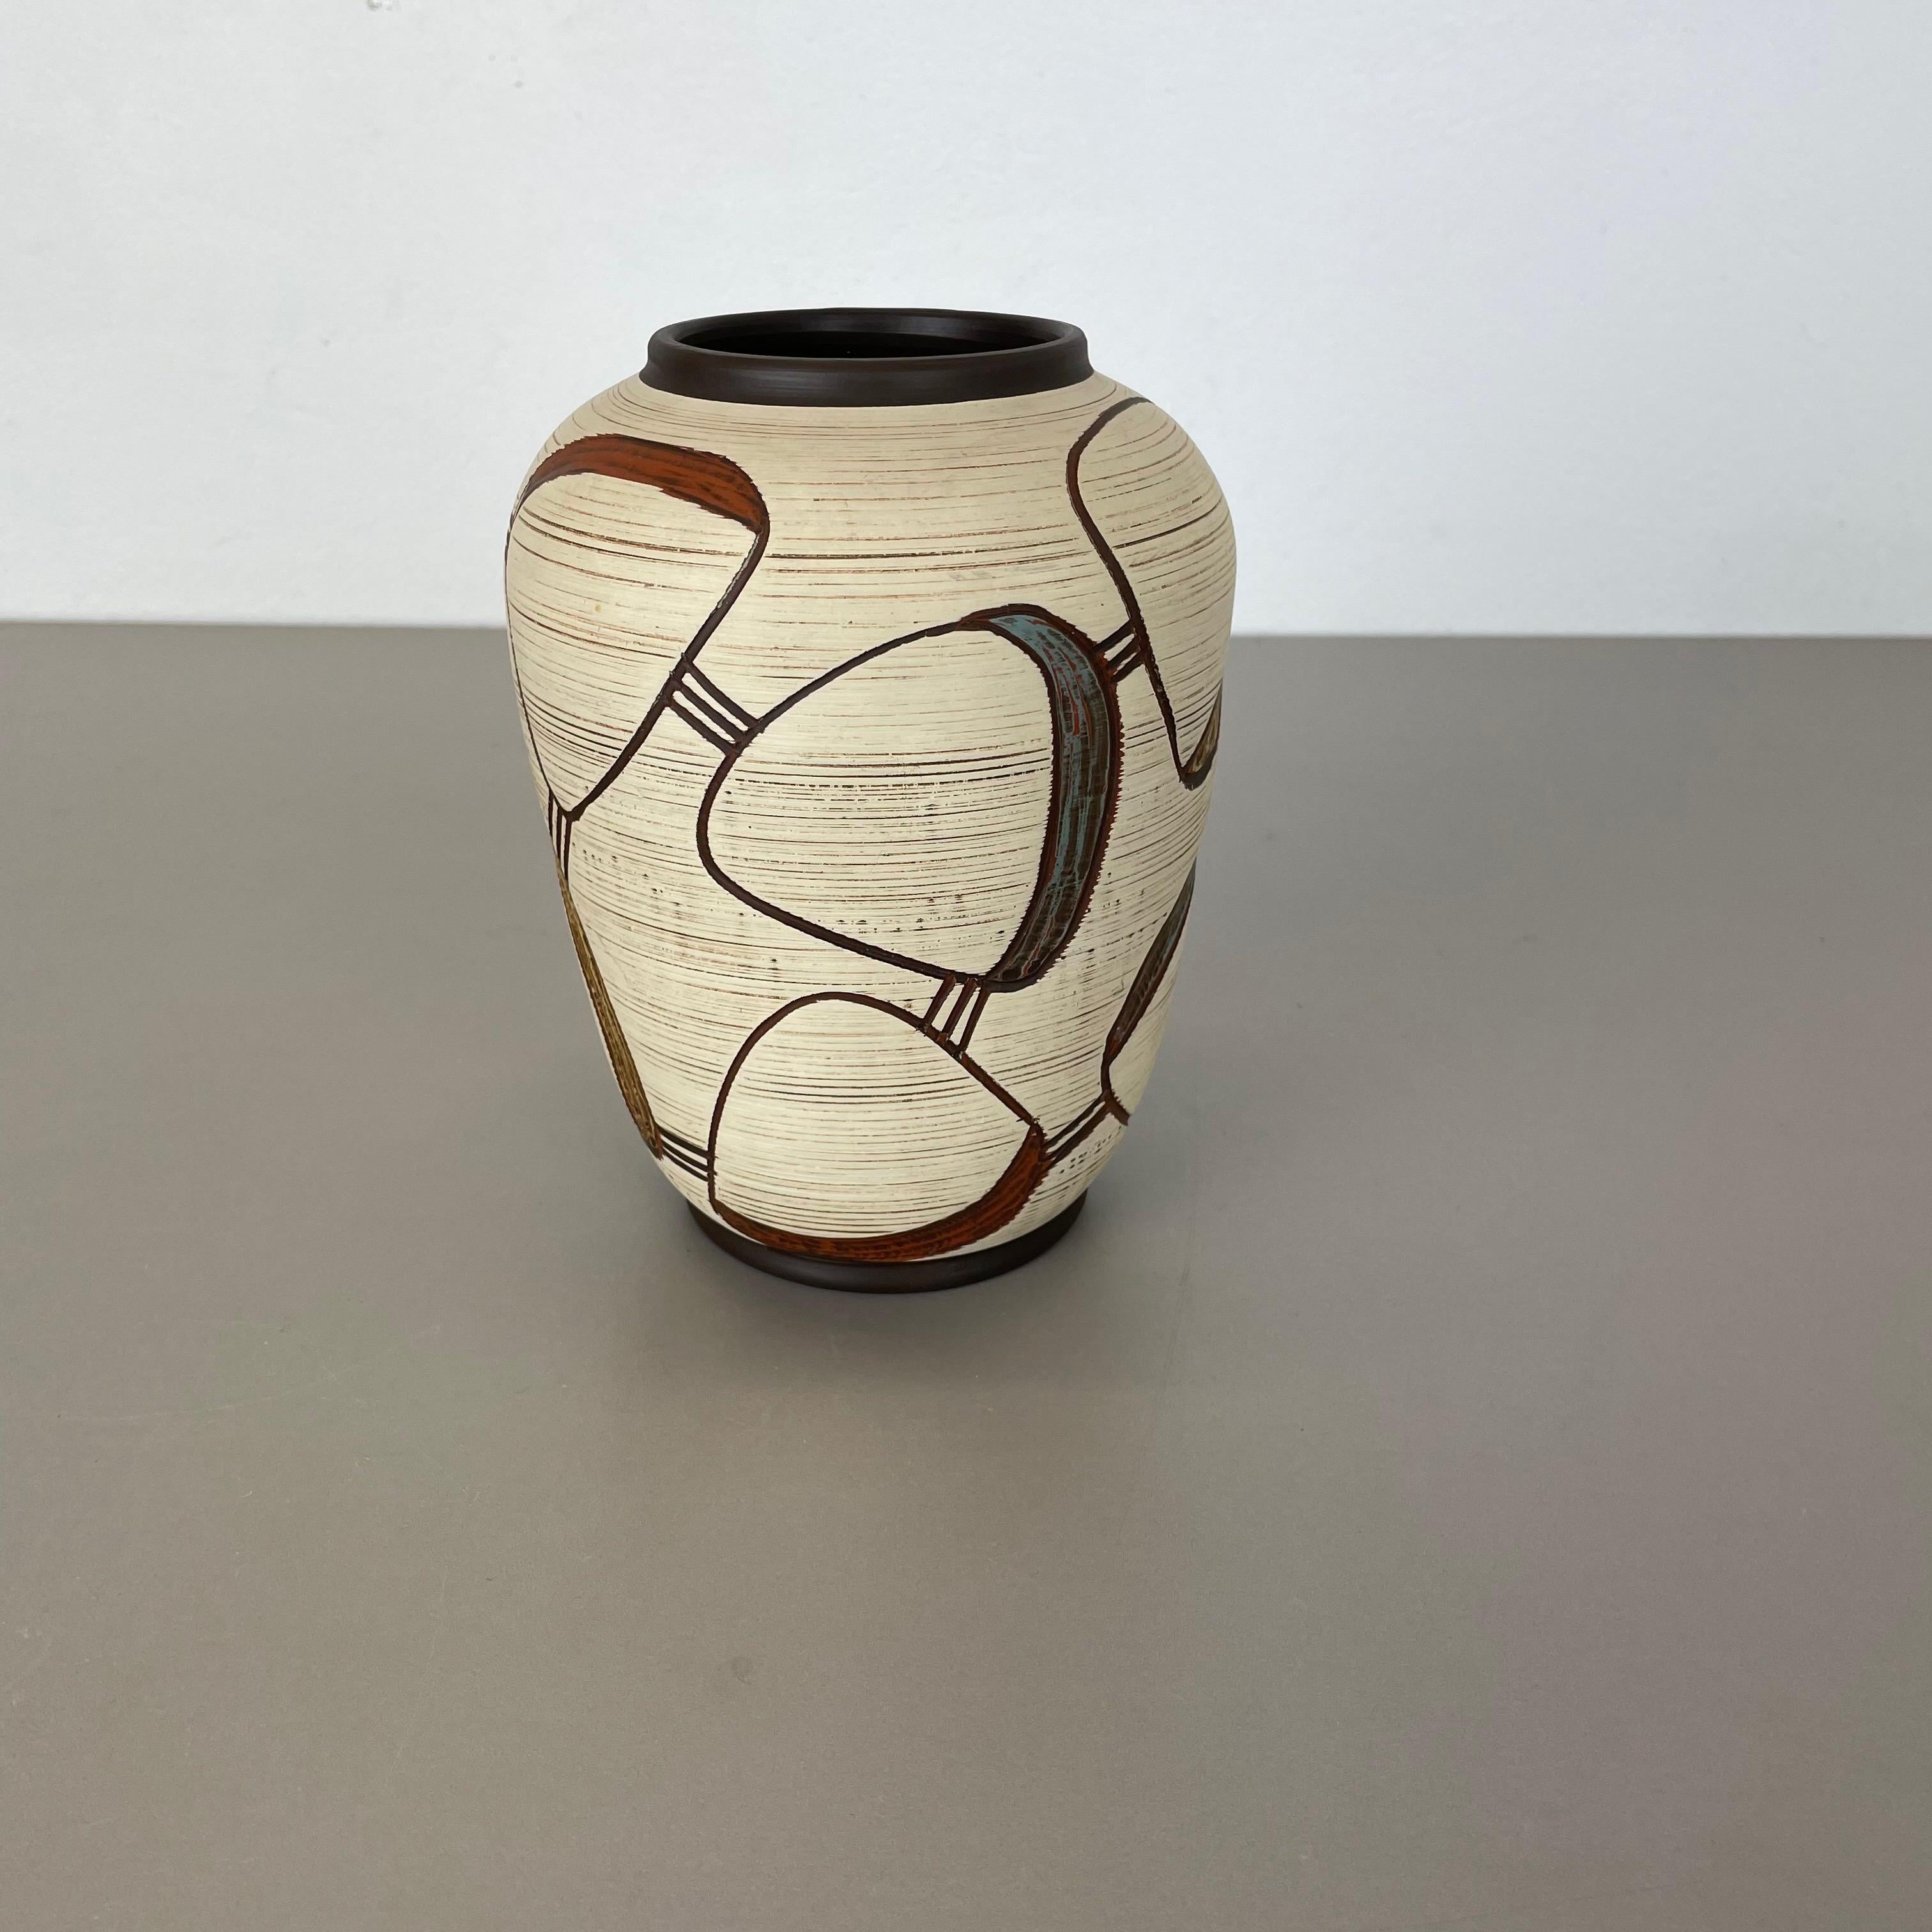 Artículo:

Jarrón de cerámica


Productor:

Sawa Ceramic, Alemania


Diseño:

Franz Schwaderlapp



Década:

1950s



Descripción:

Original jarrón de cerámica vintage de los años 1950 en Alemania. Producción alemana de alta